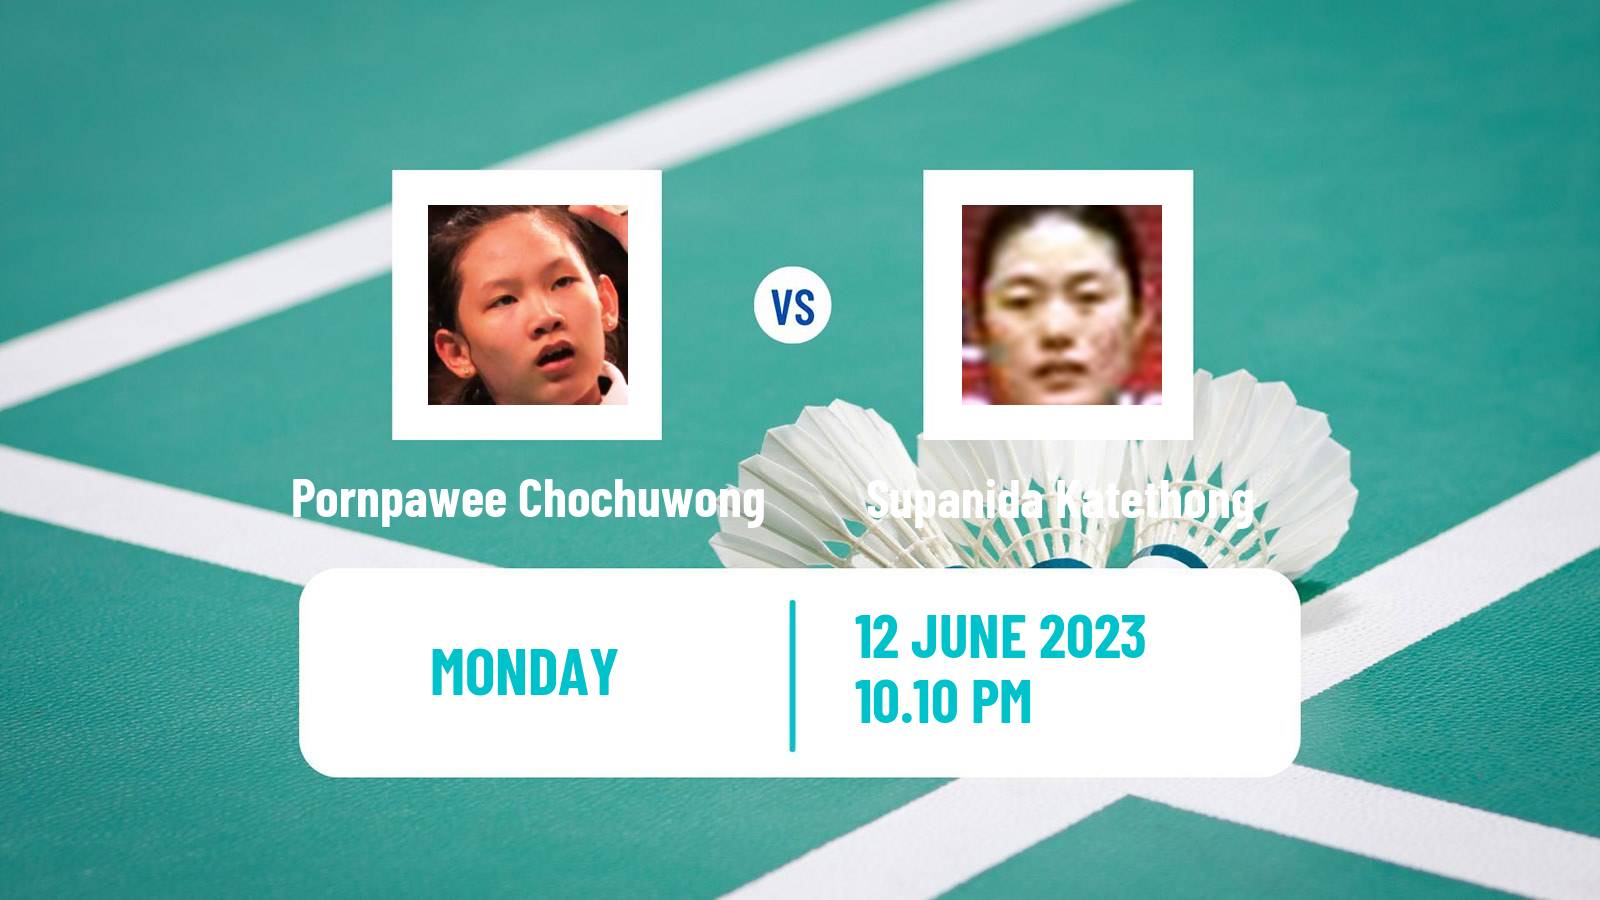 Badminton BWF World Tour Indonesia Open Women Pornpawee Chochuwong - Supanida Katethong